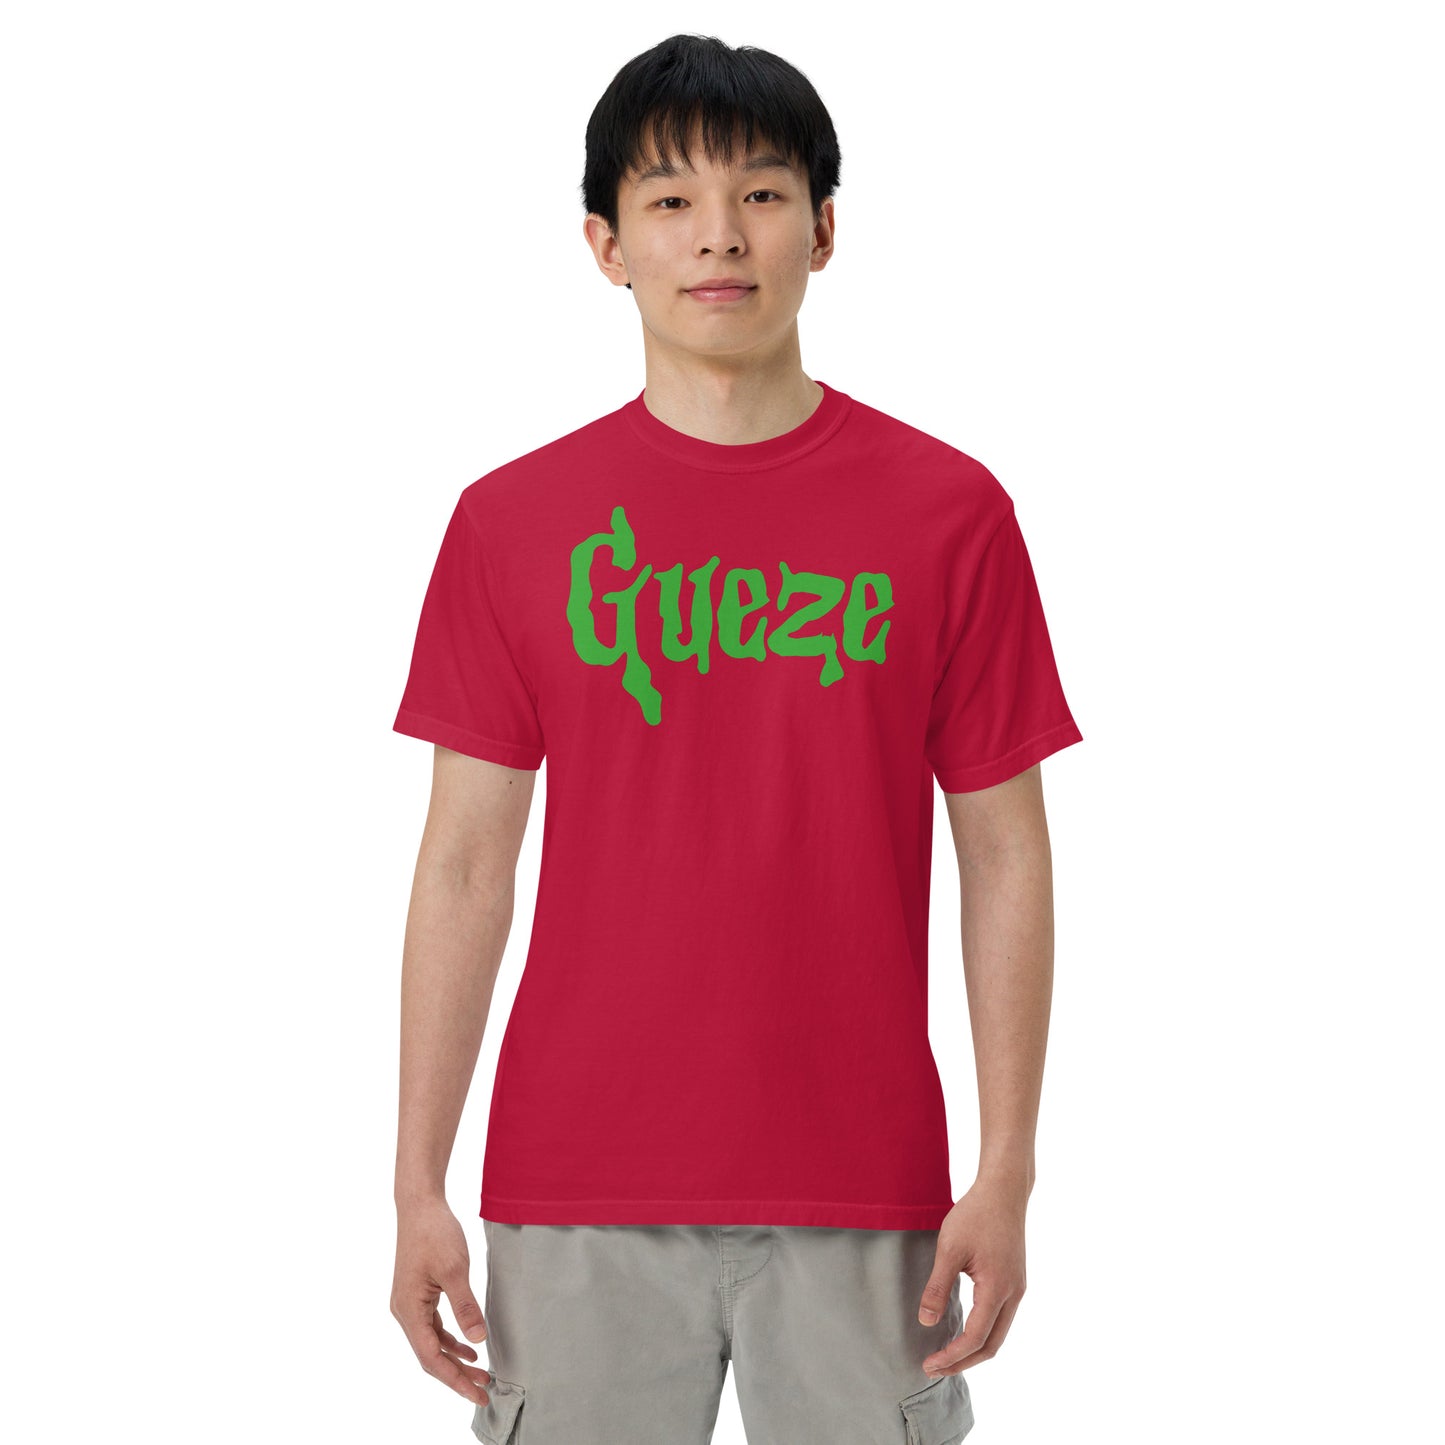 Gueze Slime Green heavyweight t-shirt Unisex